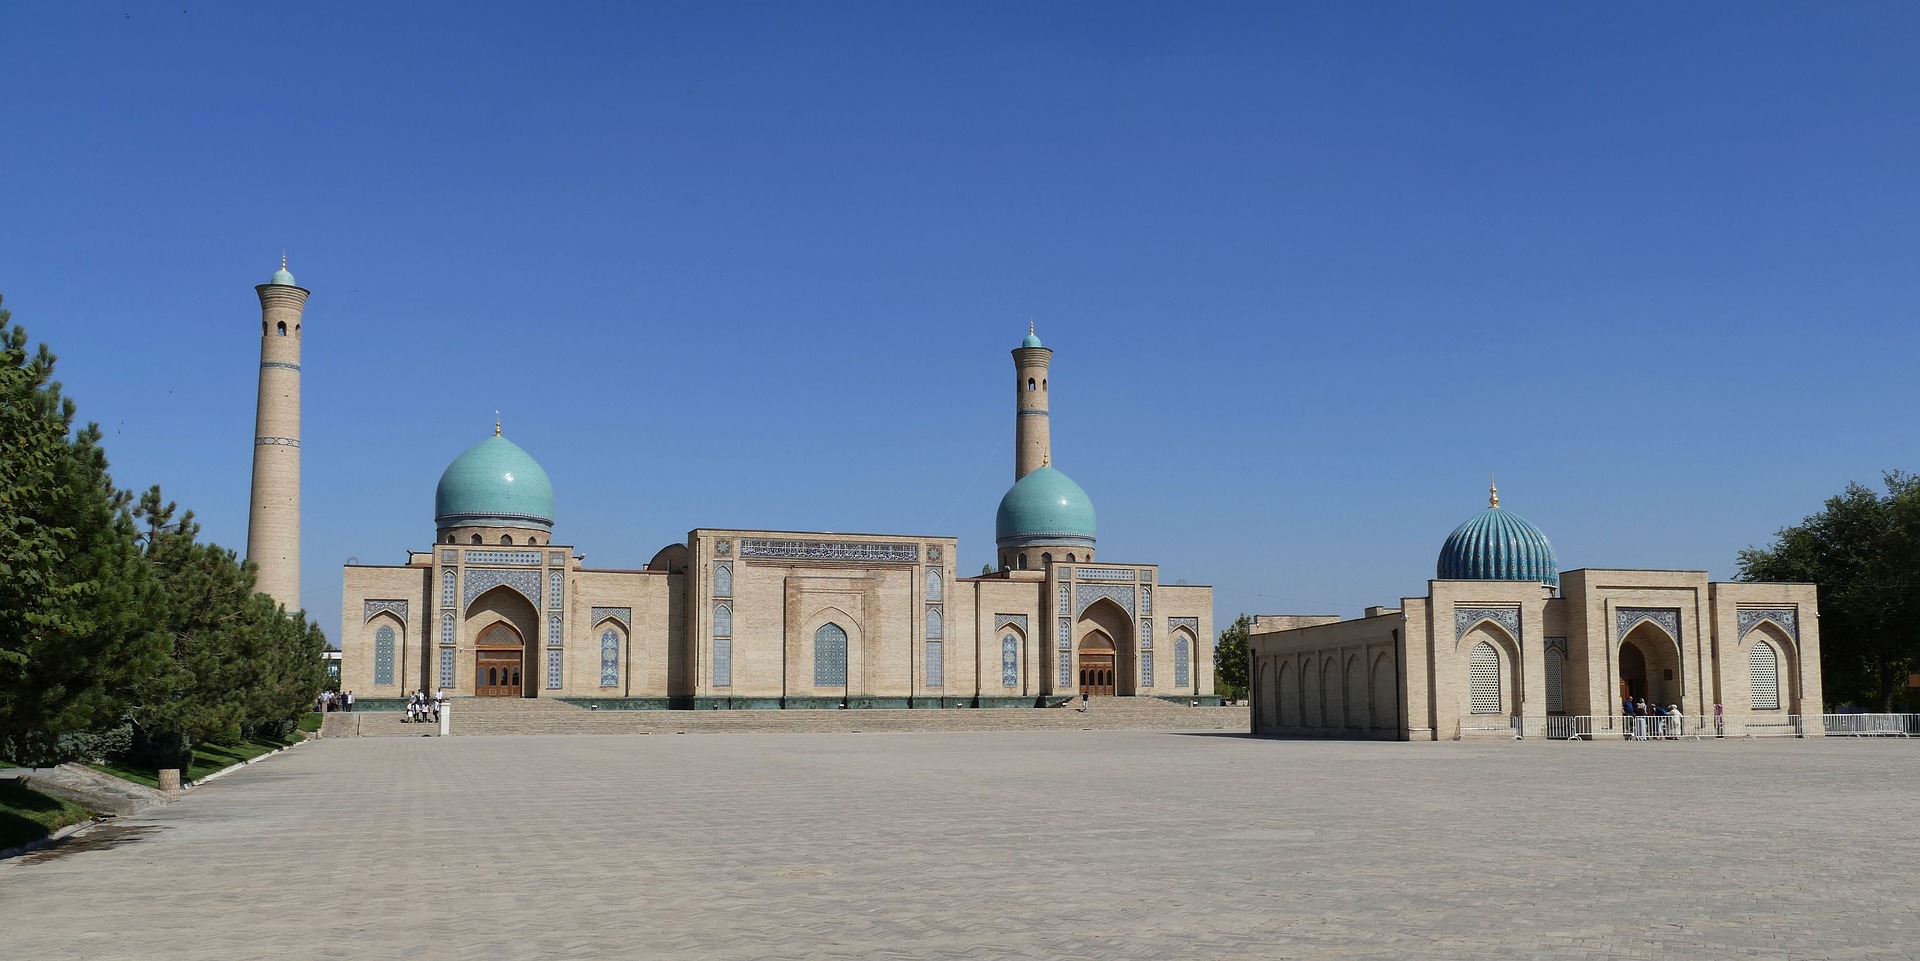 Tour Uzbekistan